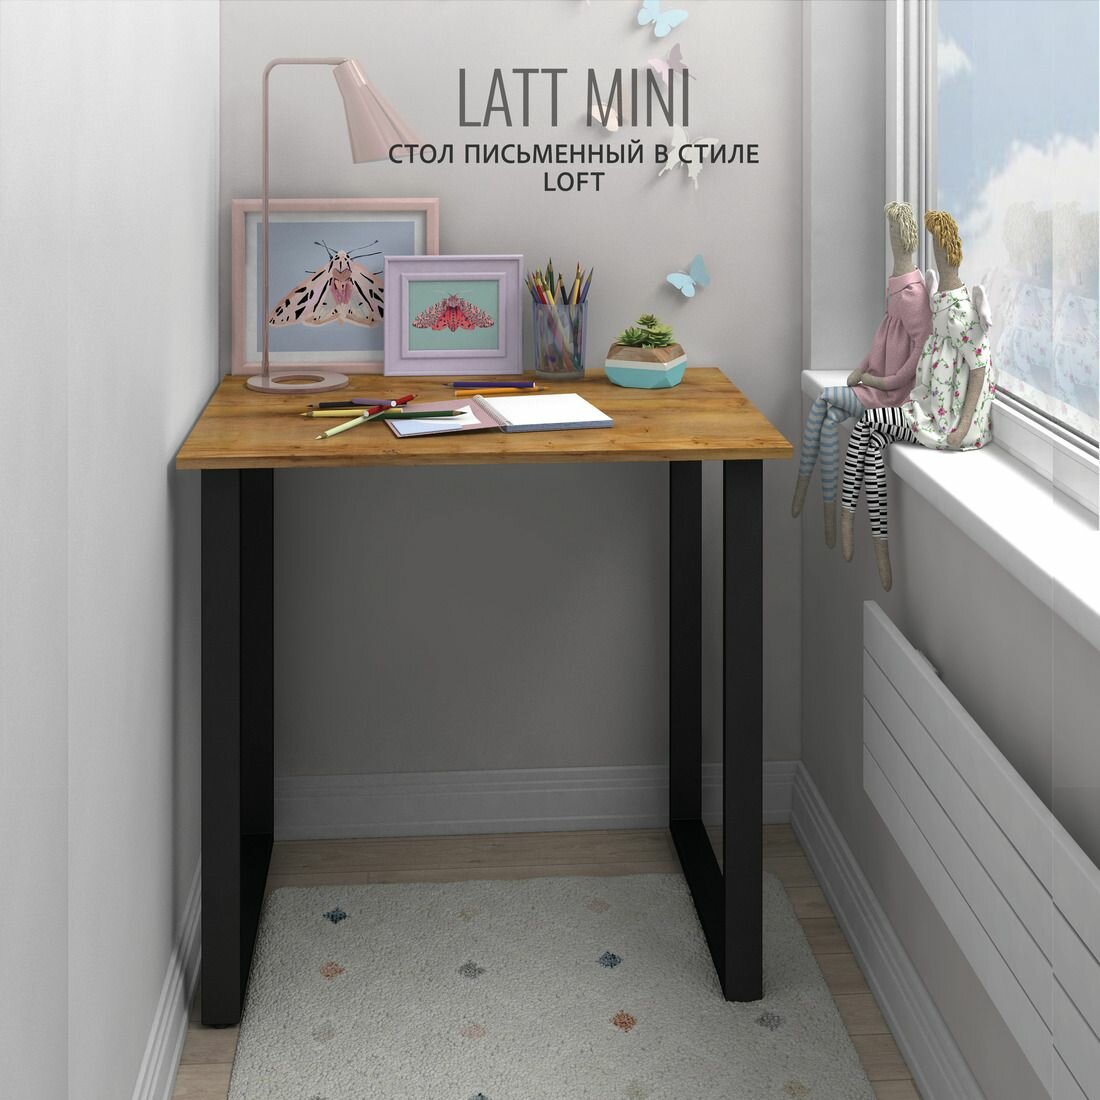 Стол письменный LATT mini, коричневый, компьютерный, обеденный, офисный, 90х55х75 см, гростат